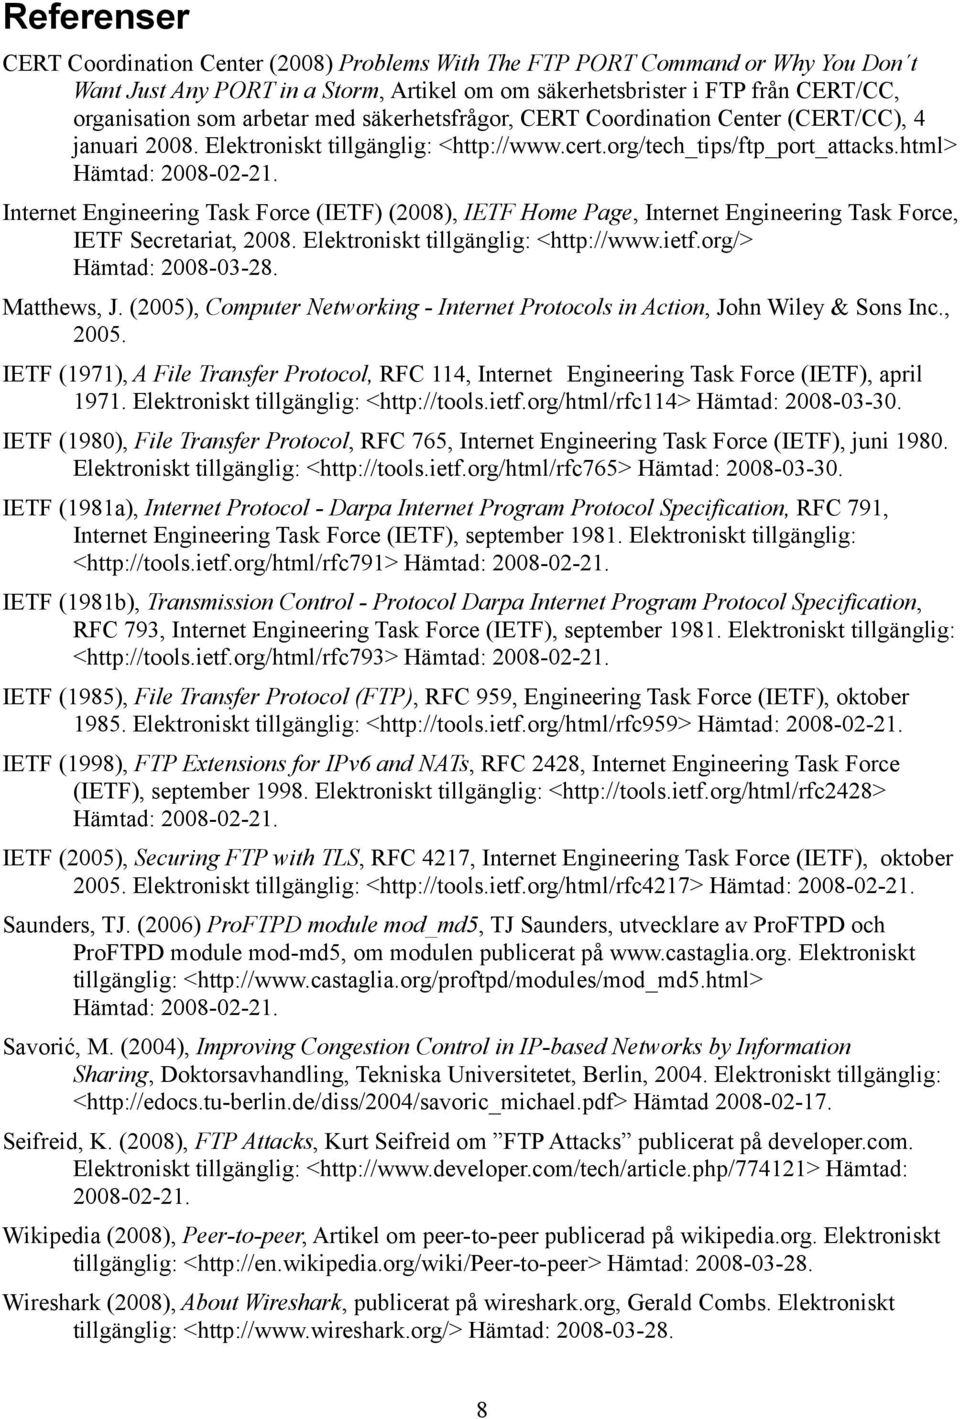 Internet Engineering Task Force (IETF) (2008), IETF Home Page, Internet Engineering Task Force, IETF Secretariat, 2008. Elektroniskt tillgänglig: <http://www.ietf.org/> Hämtad: 2008-03-28.